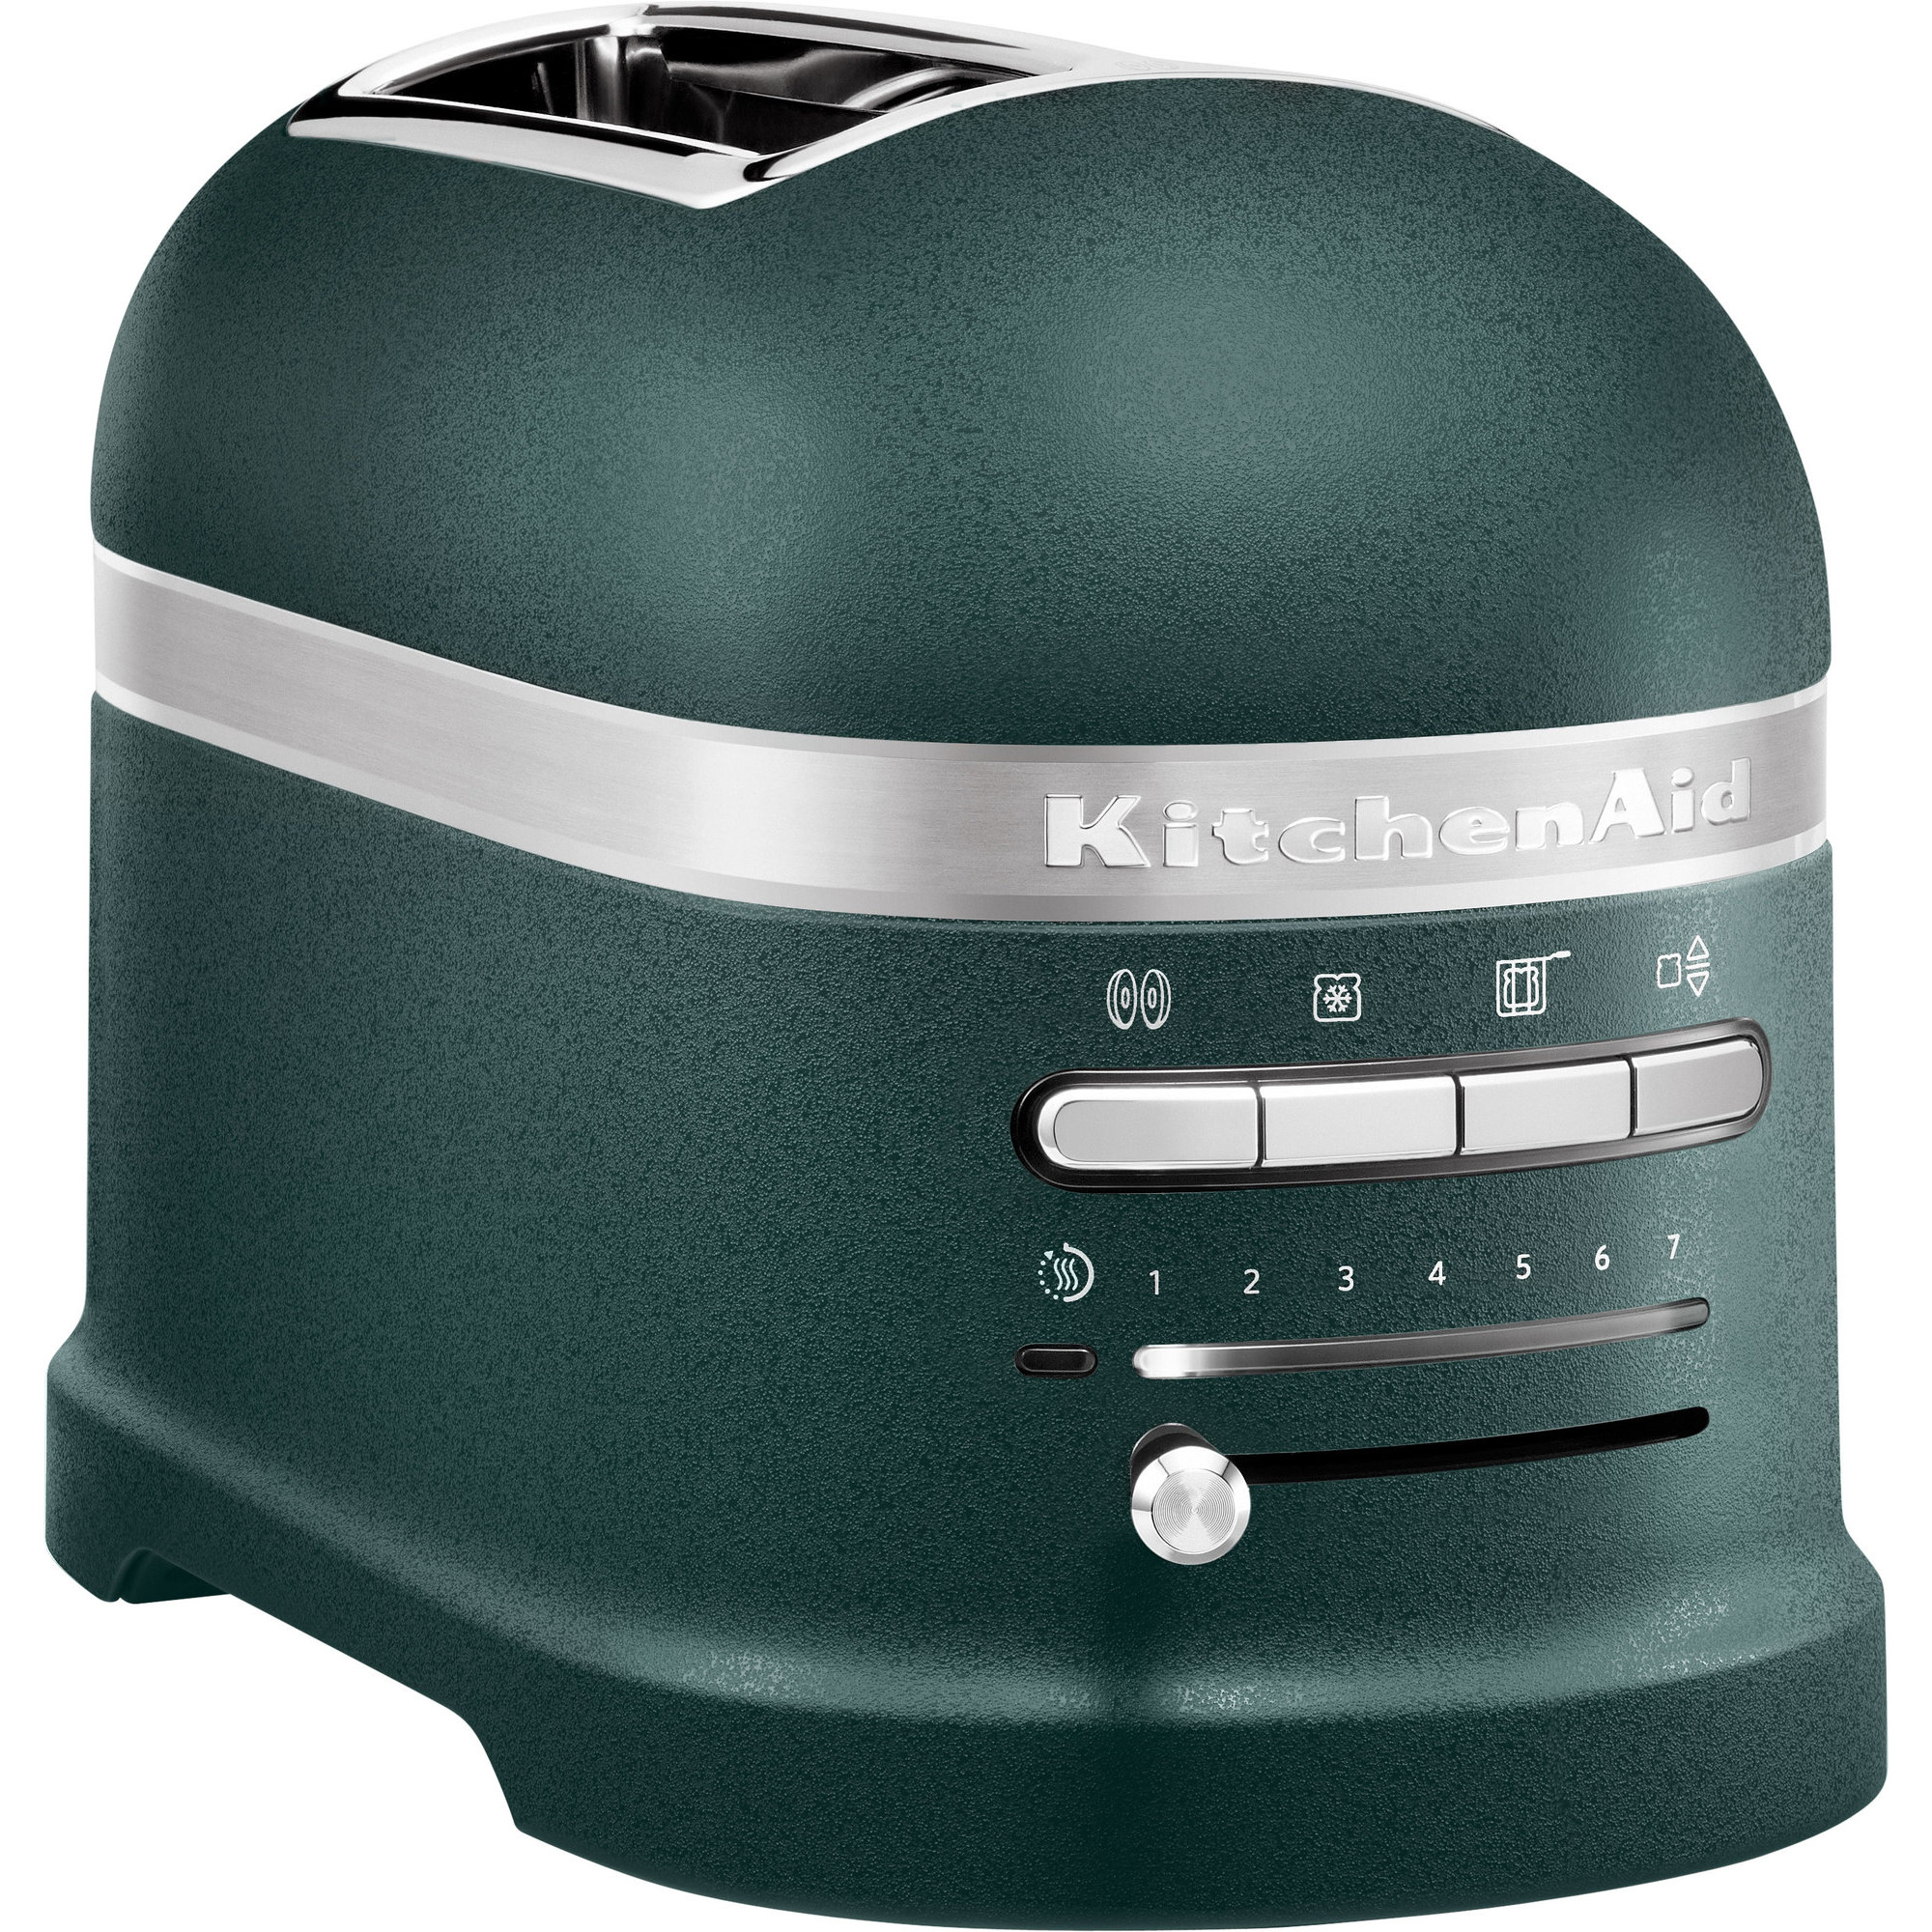 KitchenAid Artisan toaster 2 skiver, pebble palm